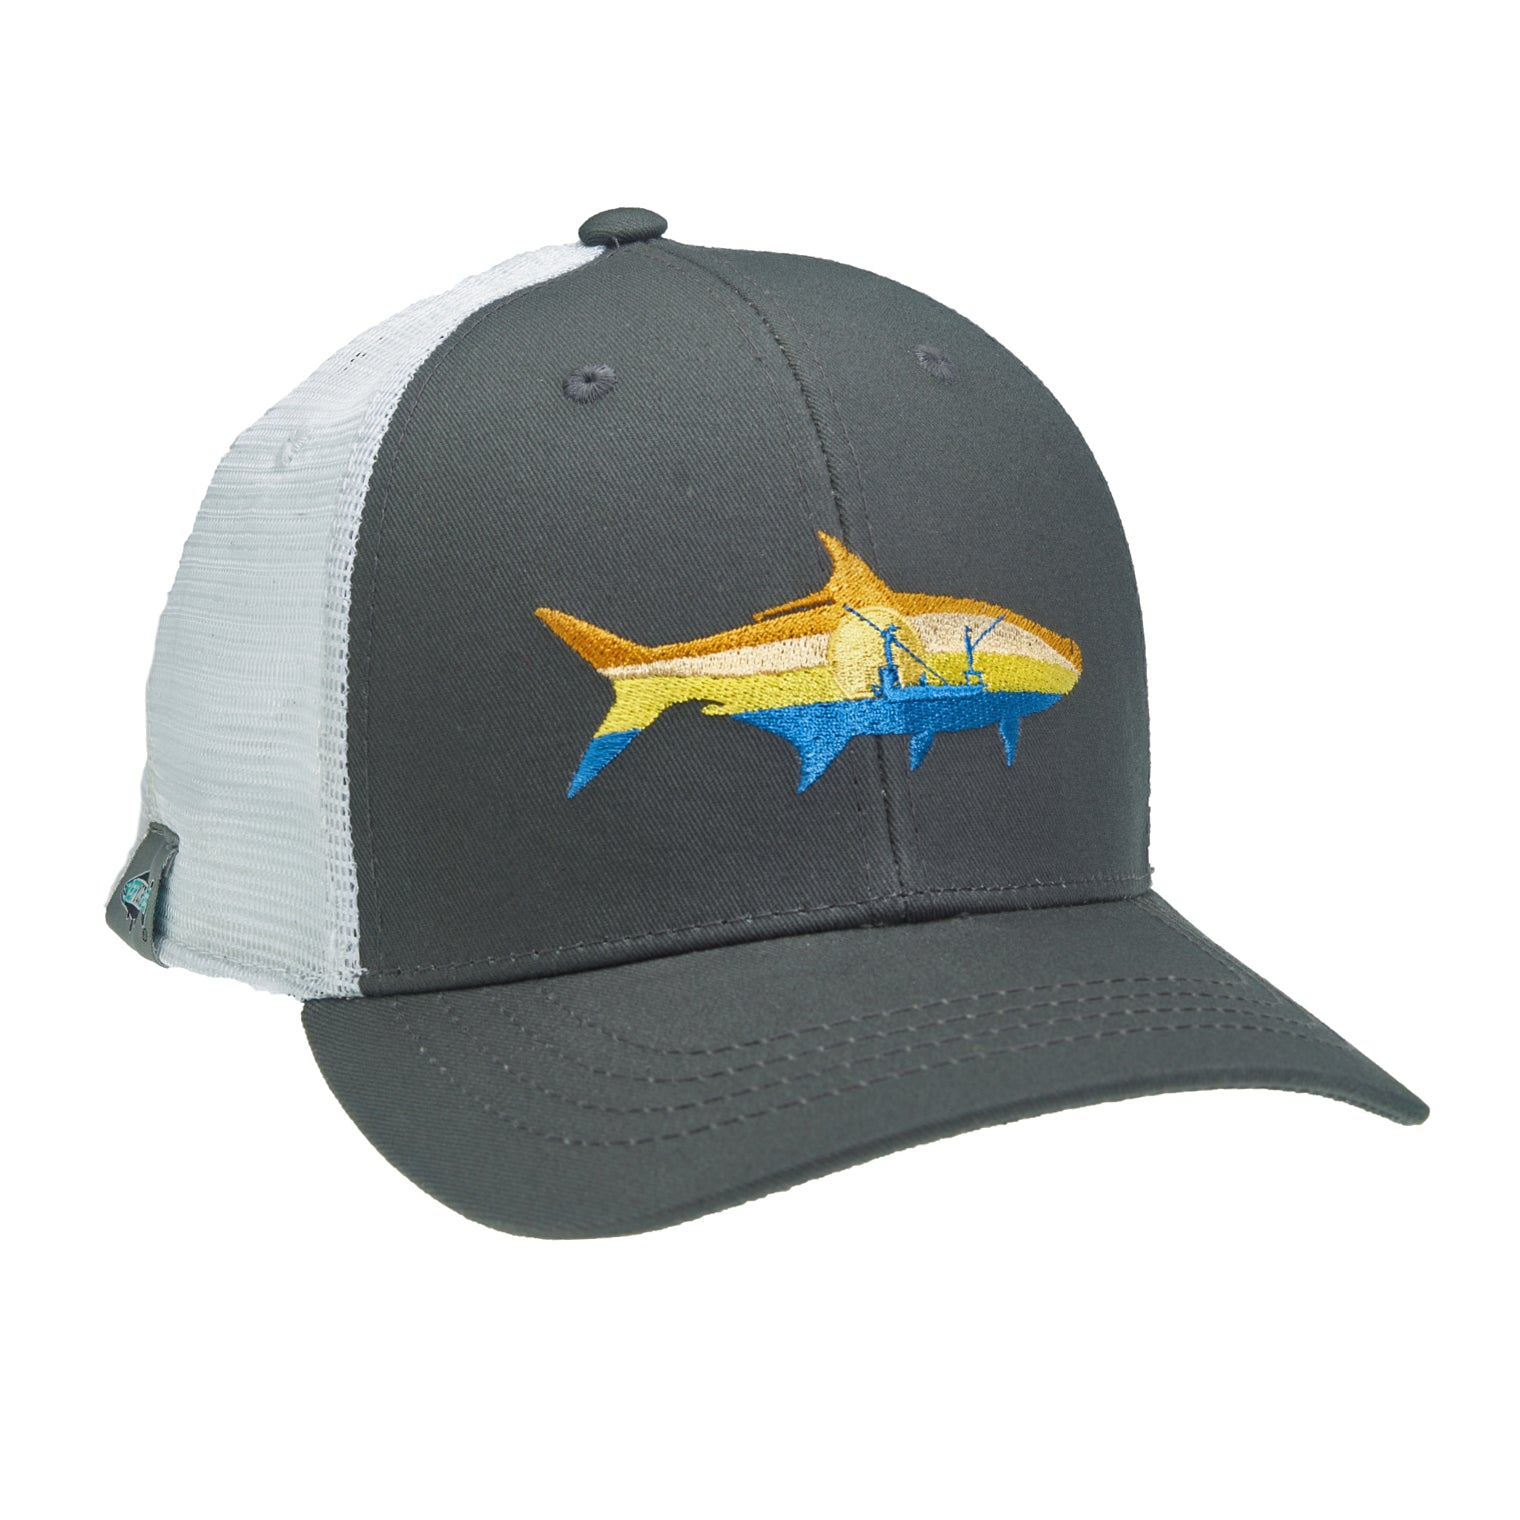 Tarpon Fishing Hat for Men and Women | Tarpon Hat Black